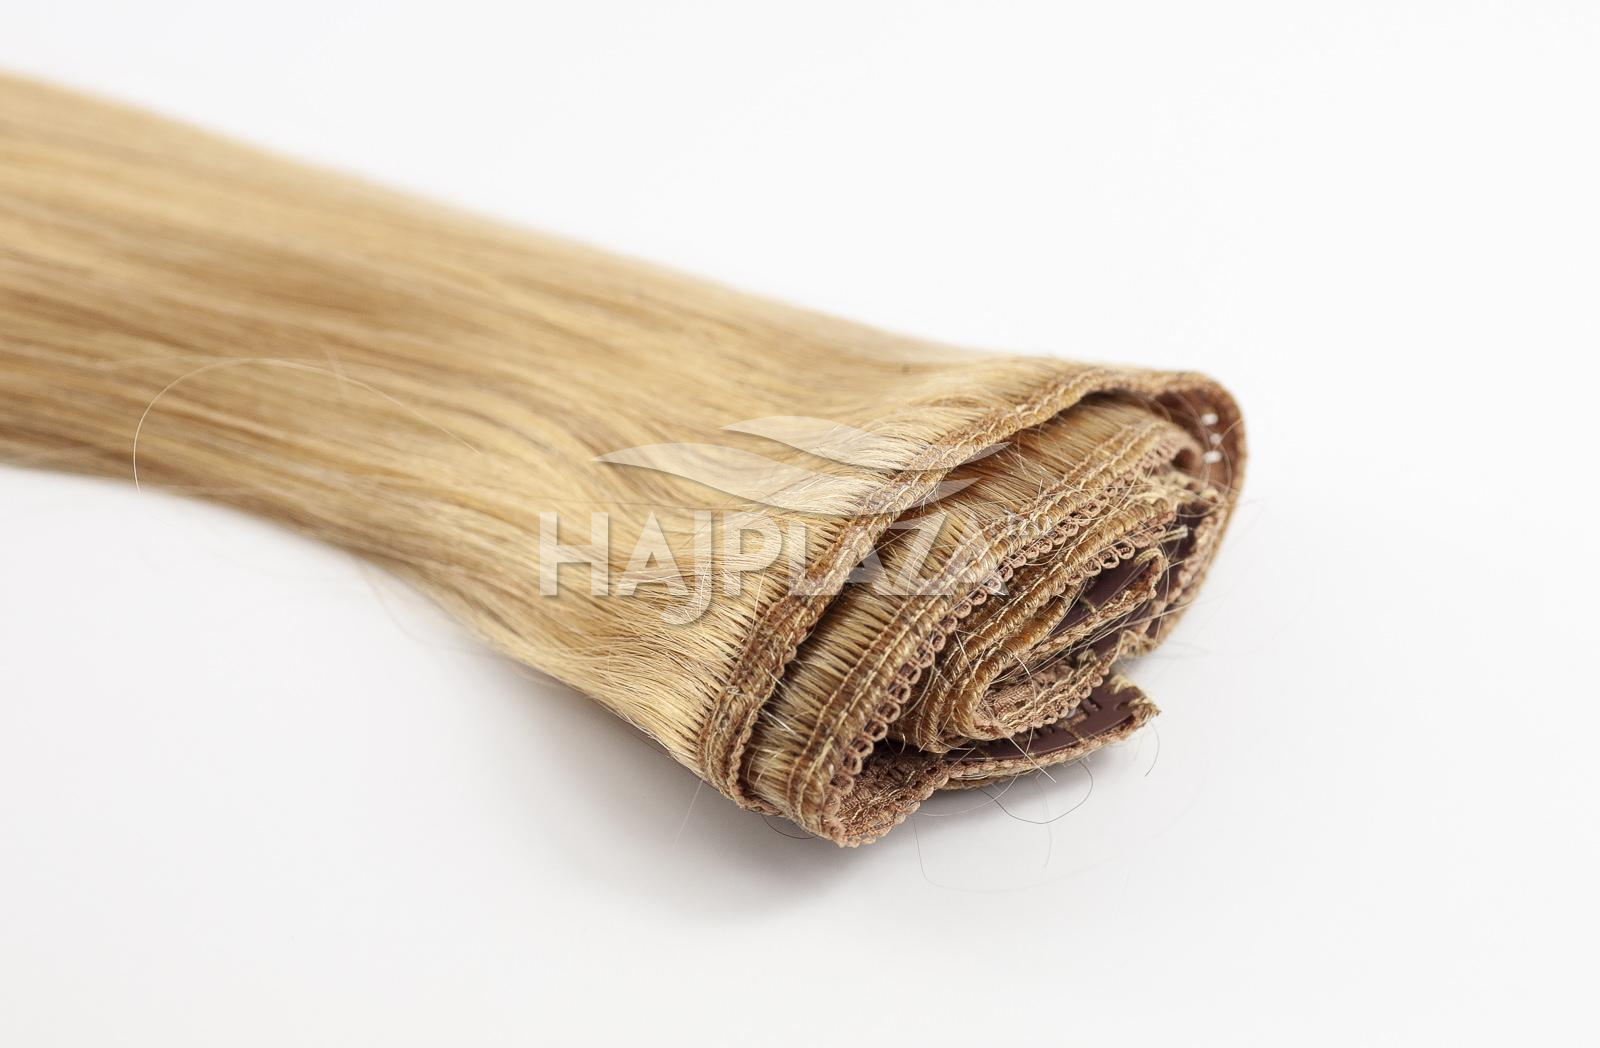  Festett középszőke  csatos haj - 70-75 cm